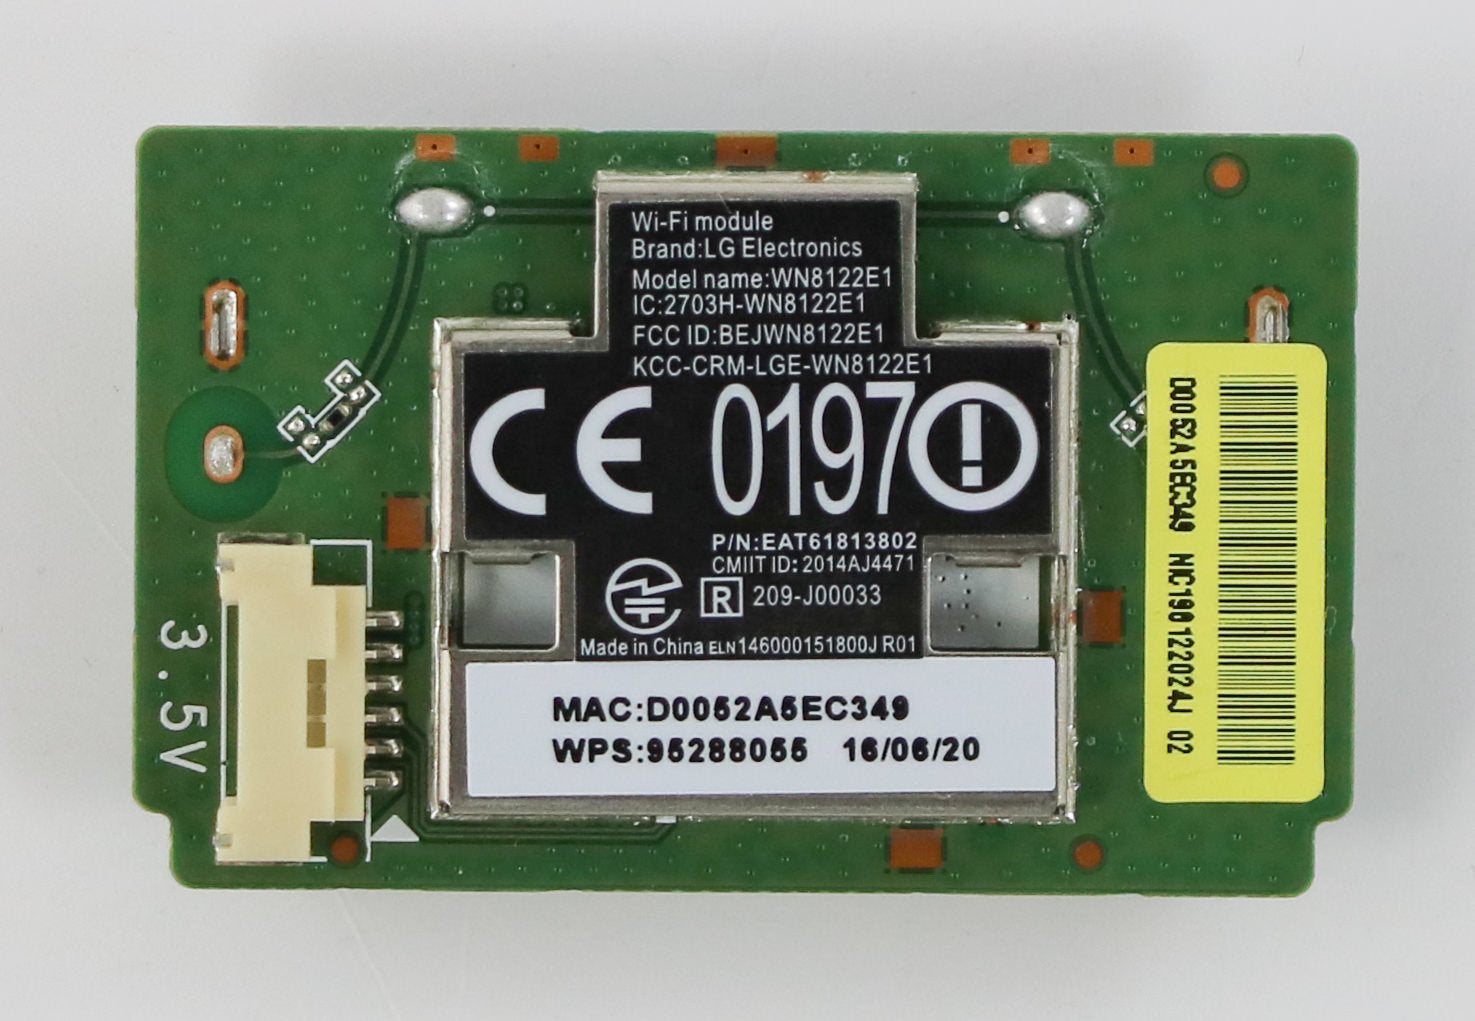 LG EAT61813802 (WN8122E1) Wi-Fi Module